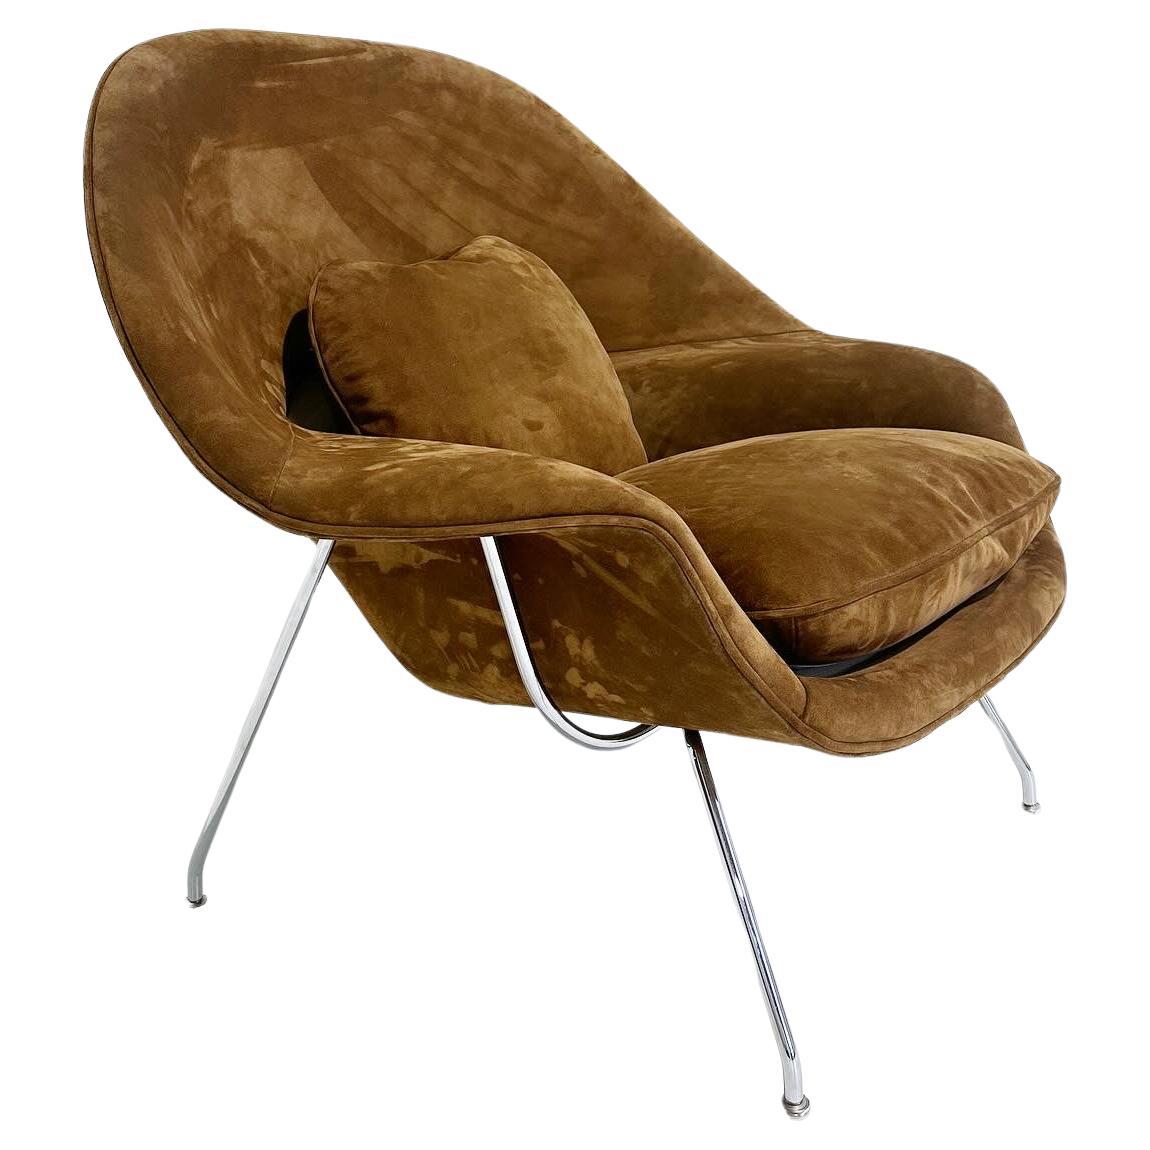 What is the history of Eero Saarinen's Womb chair?